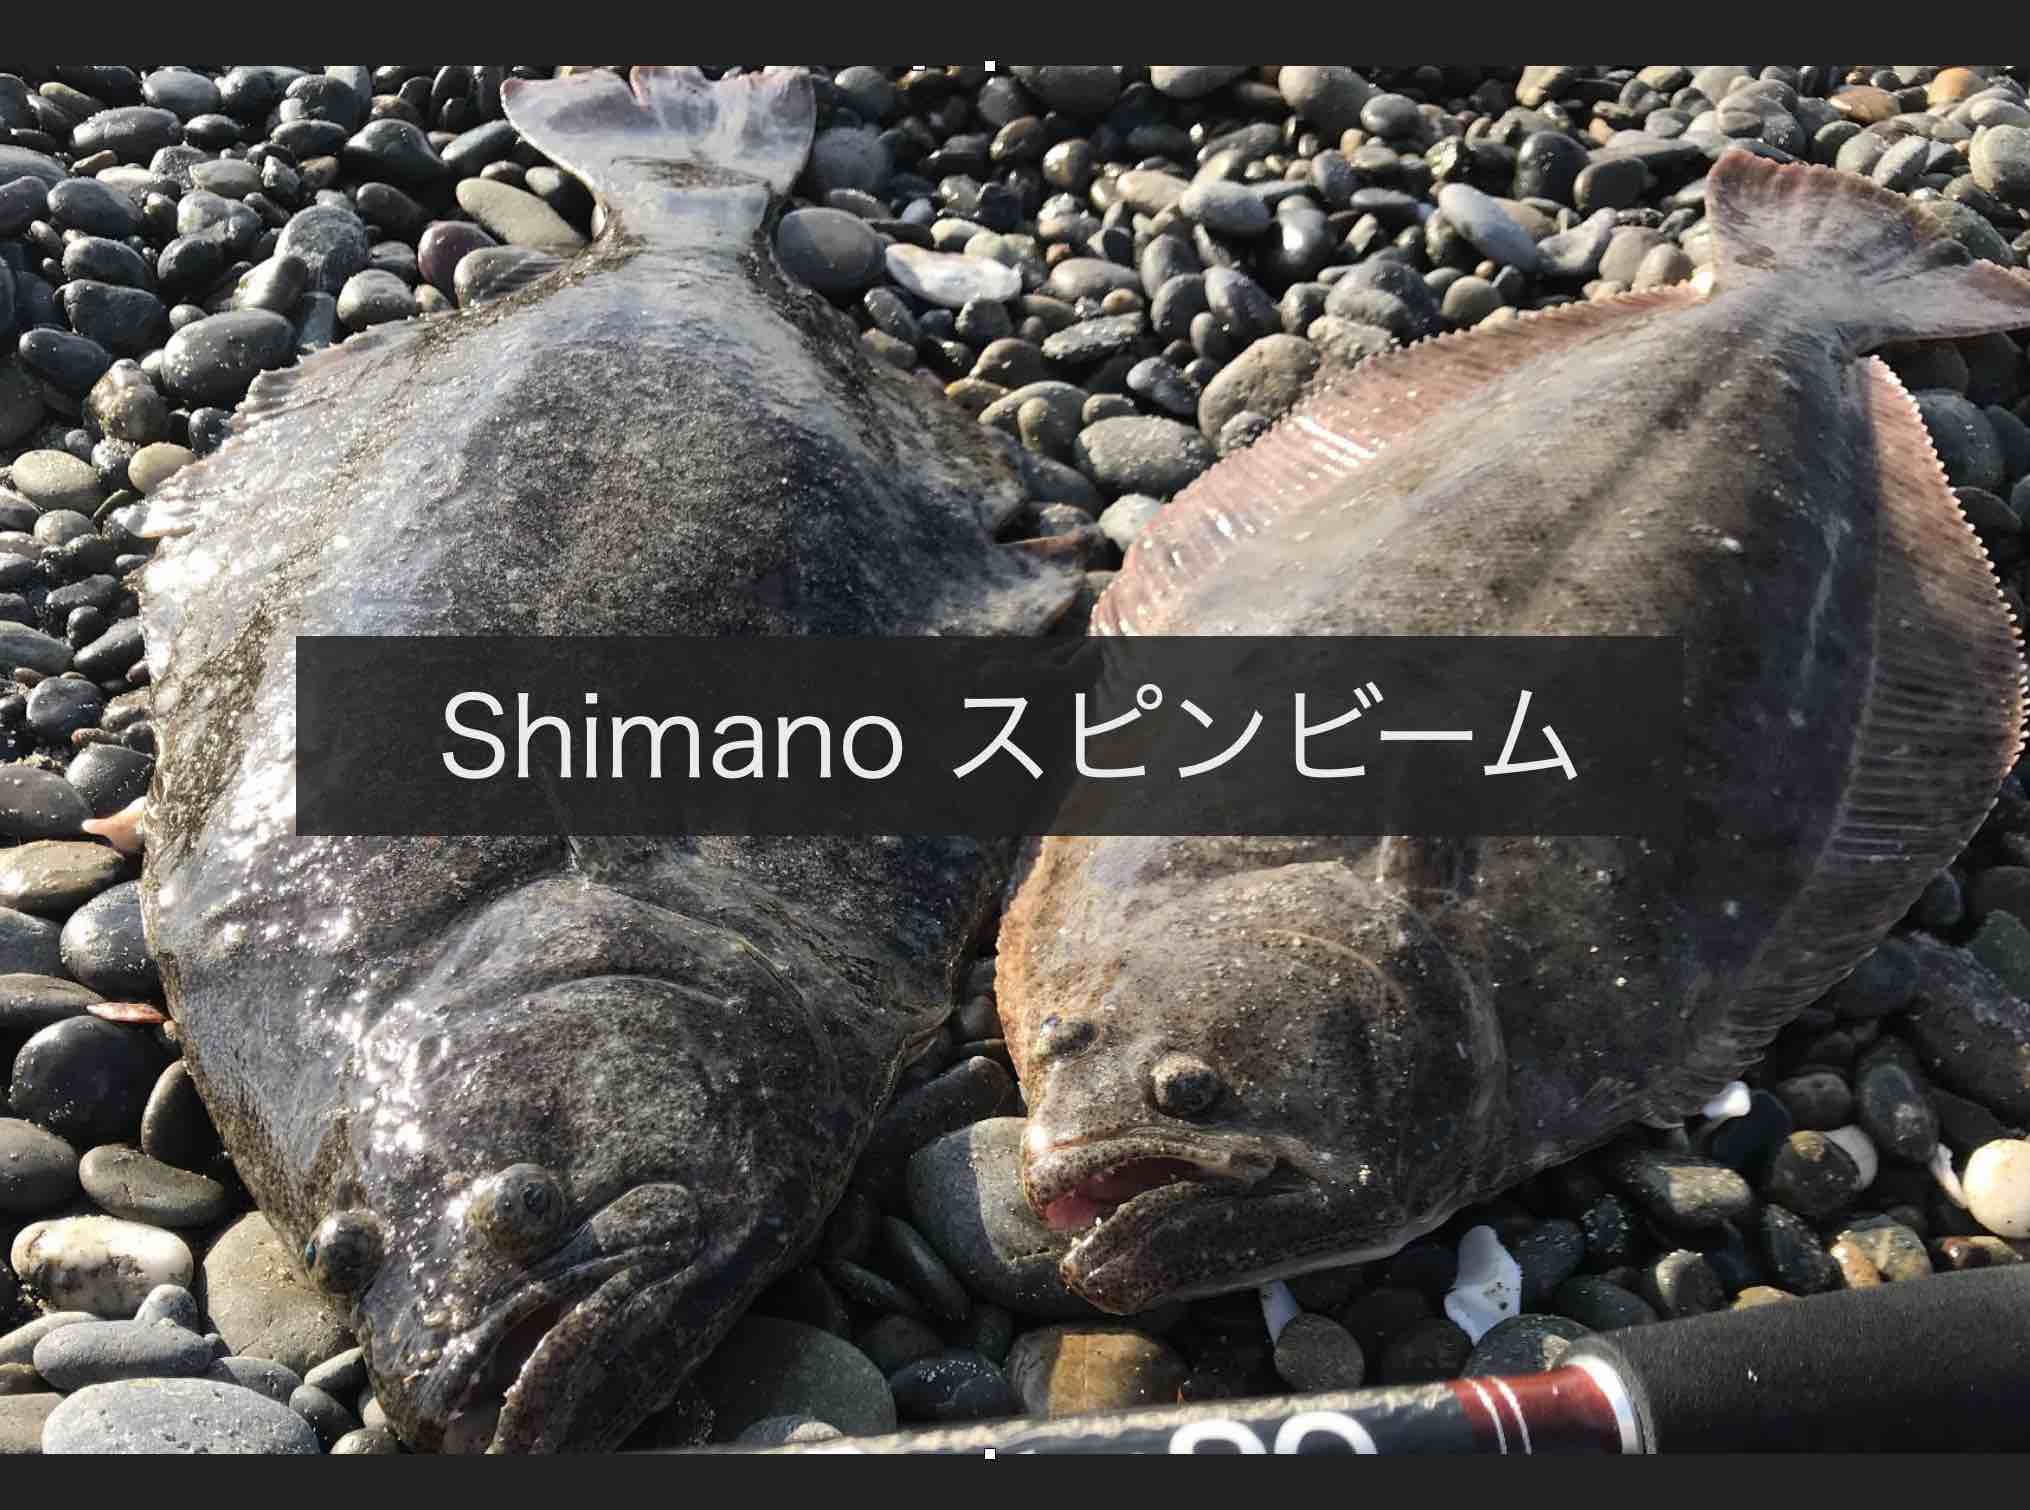 Shimano スピンビームでヒラメが釣れた